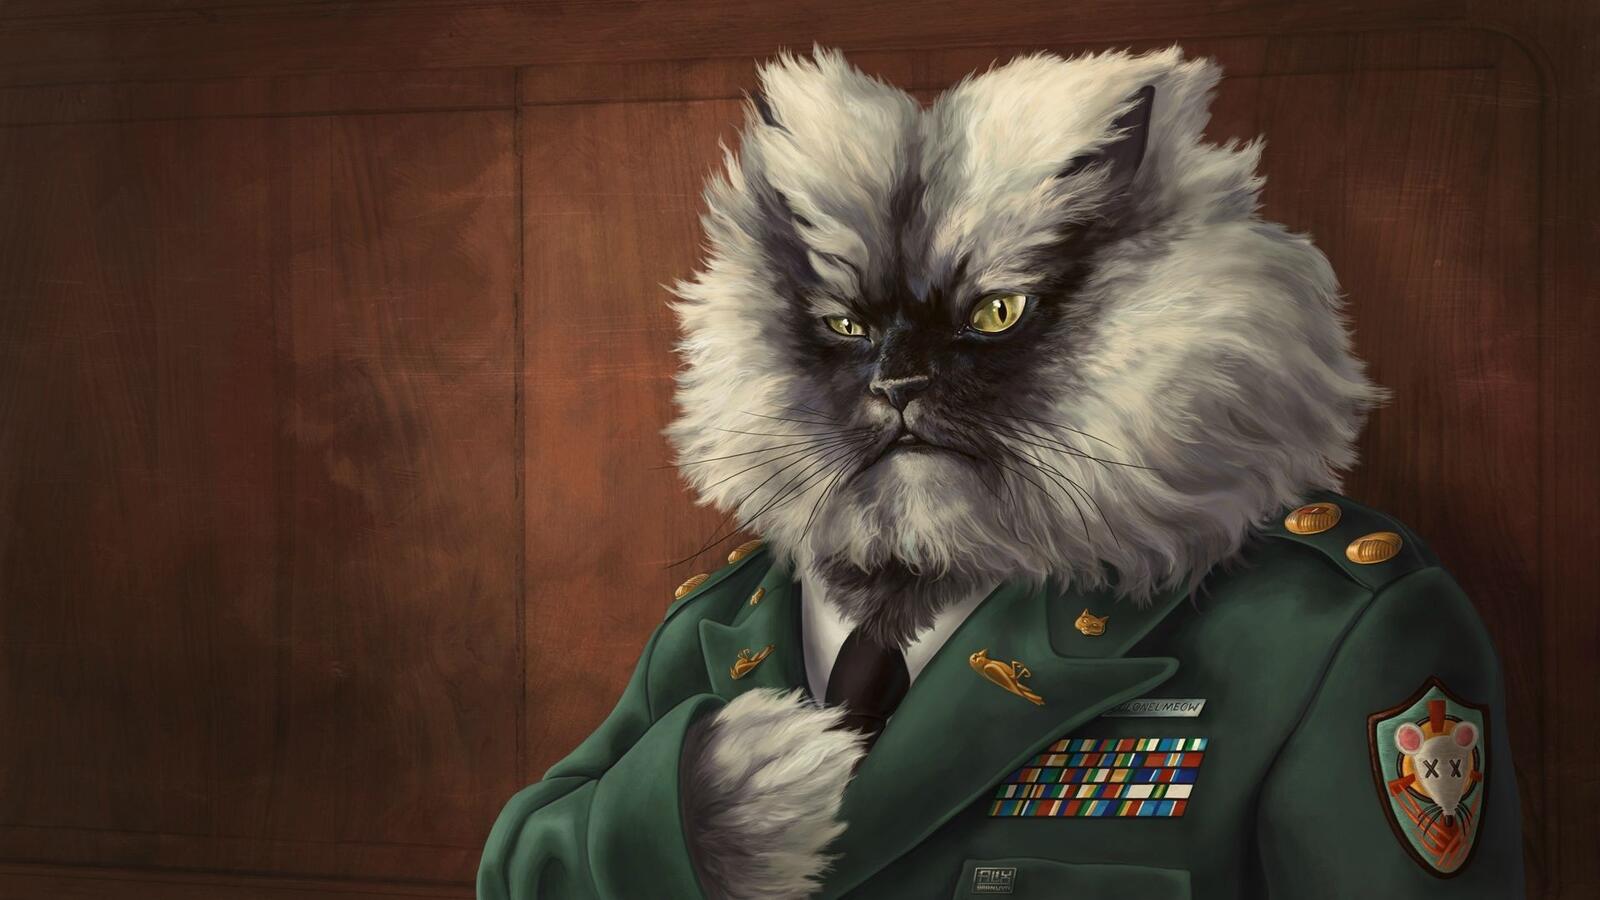 Бесплатное фото Кот в военном бушлате с орденами